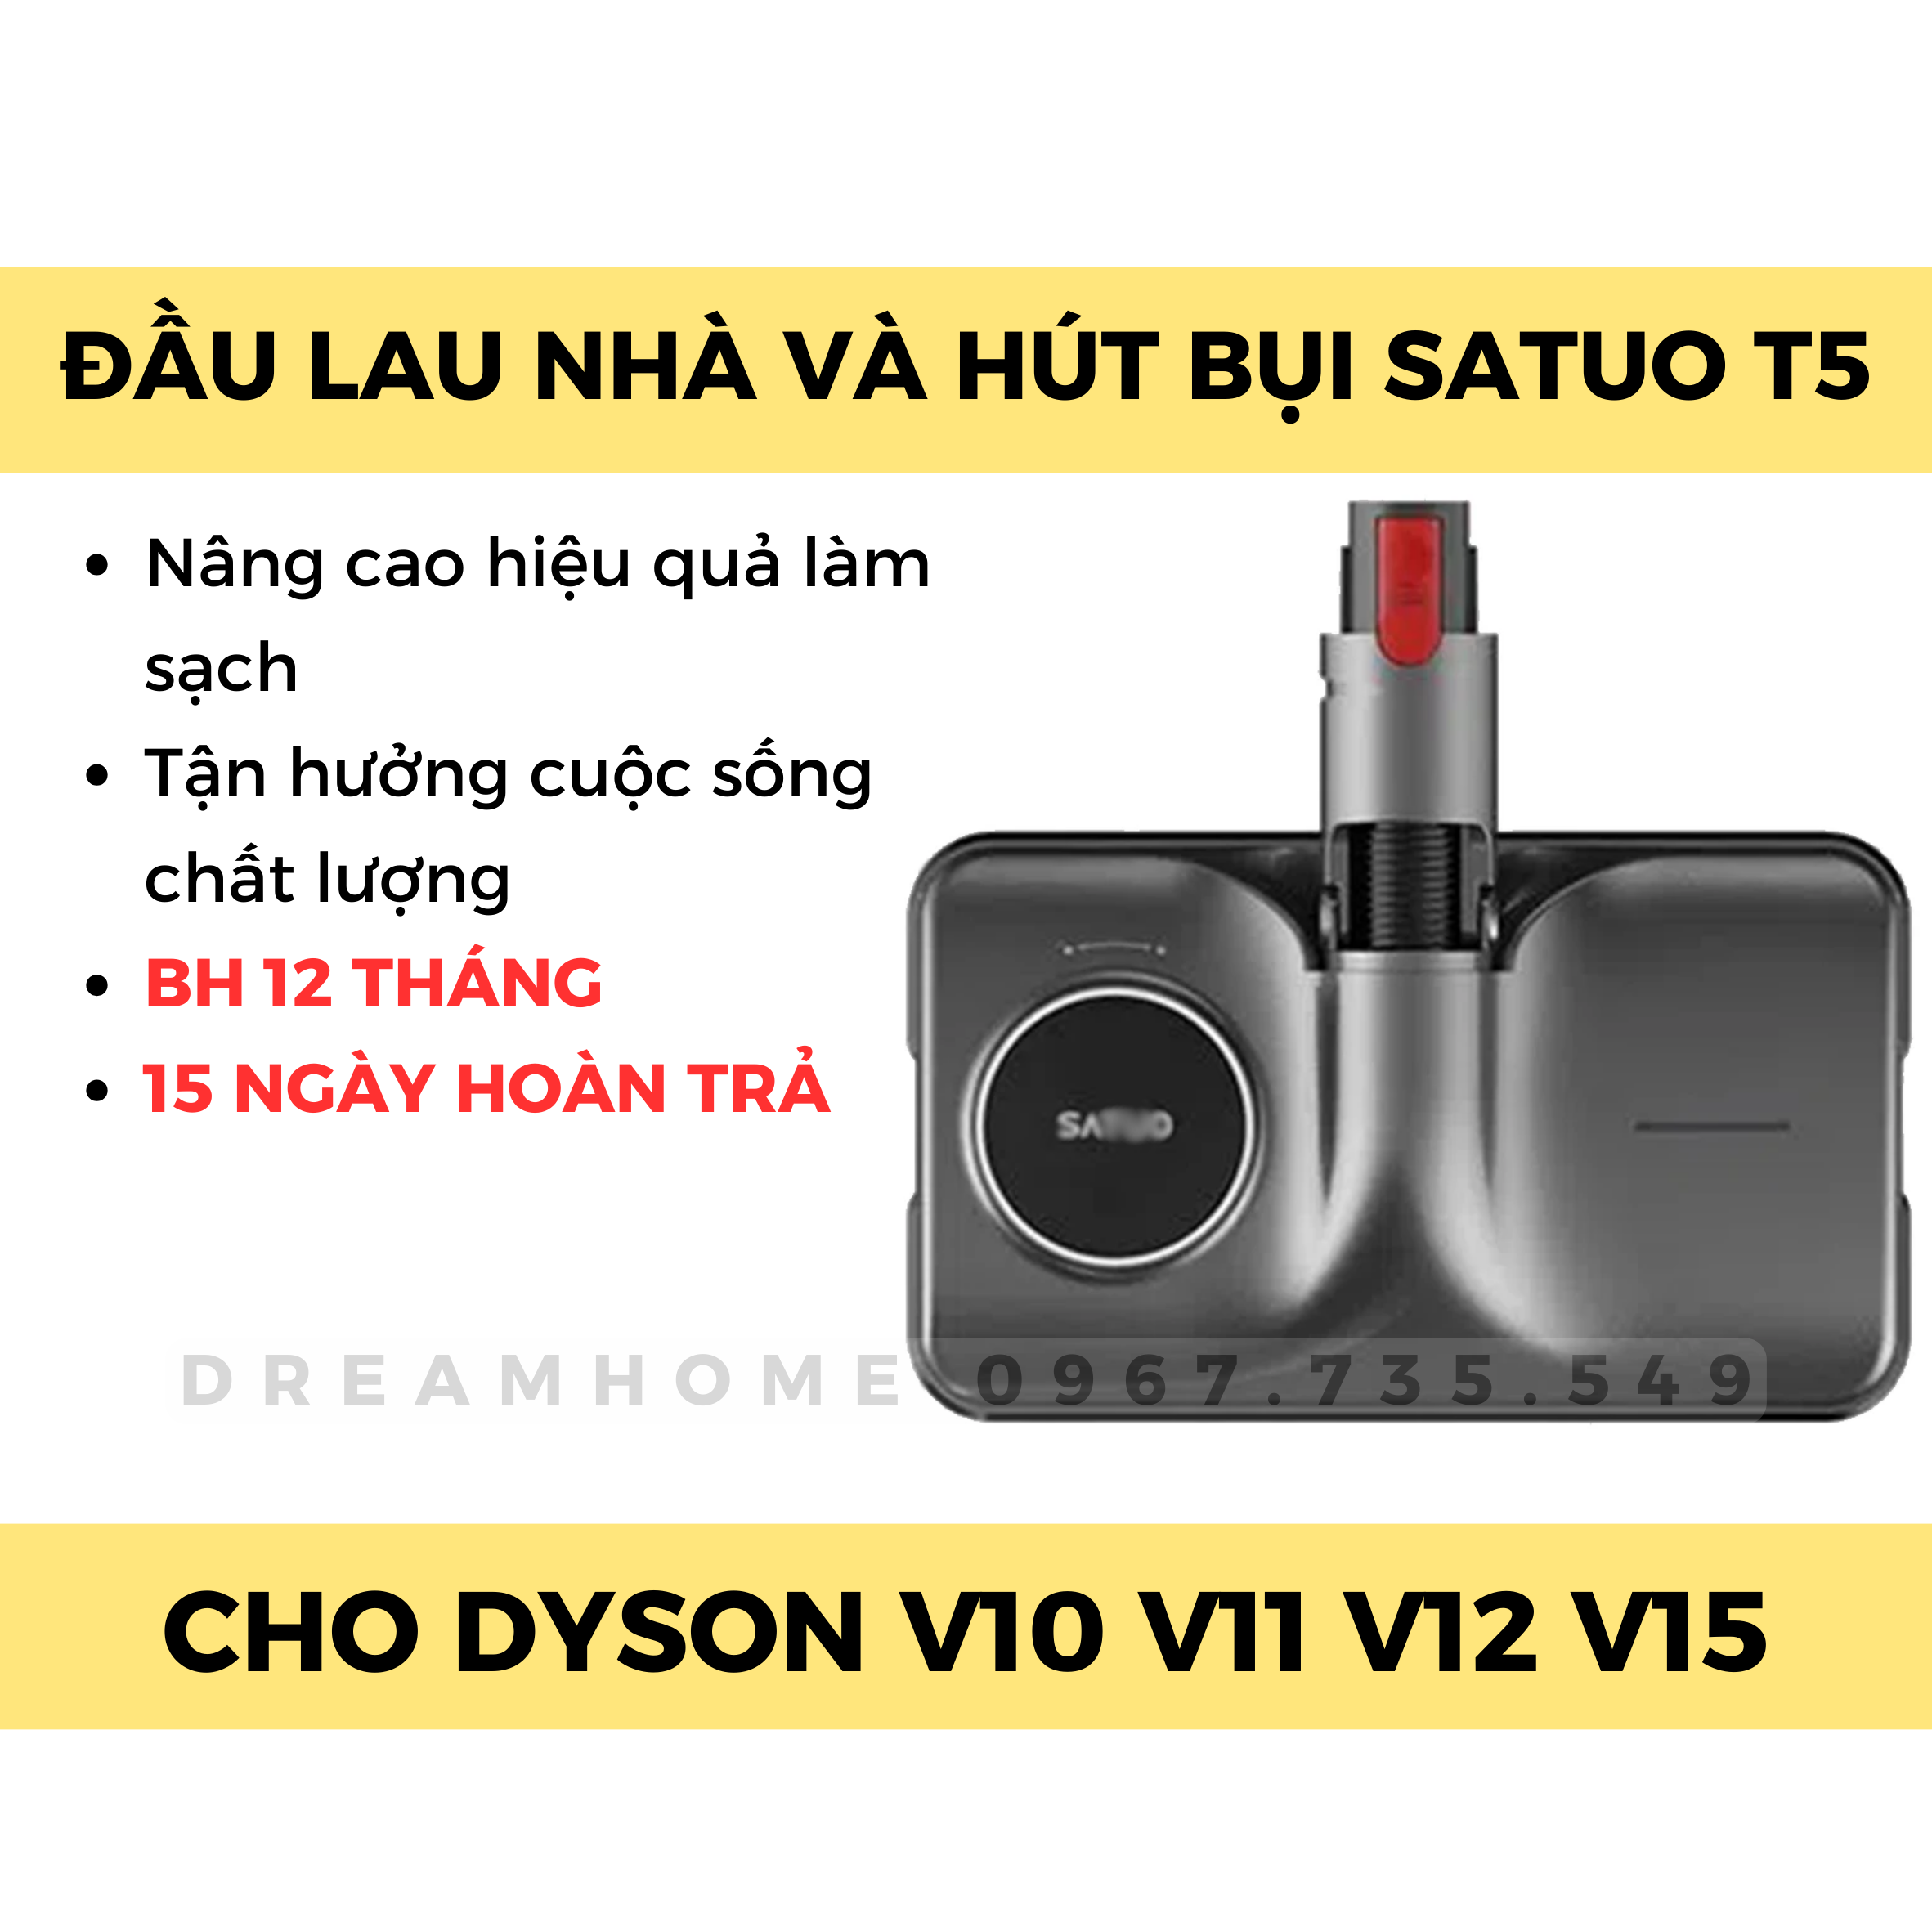 BH 12 tháng - Đầu lau nhà Satuo cho máy hút bụi Dyson V10 V11 V12 V15